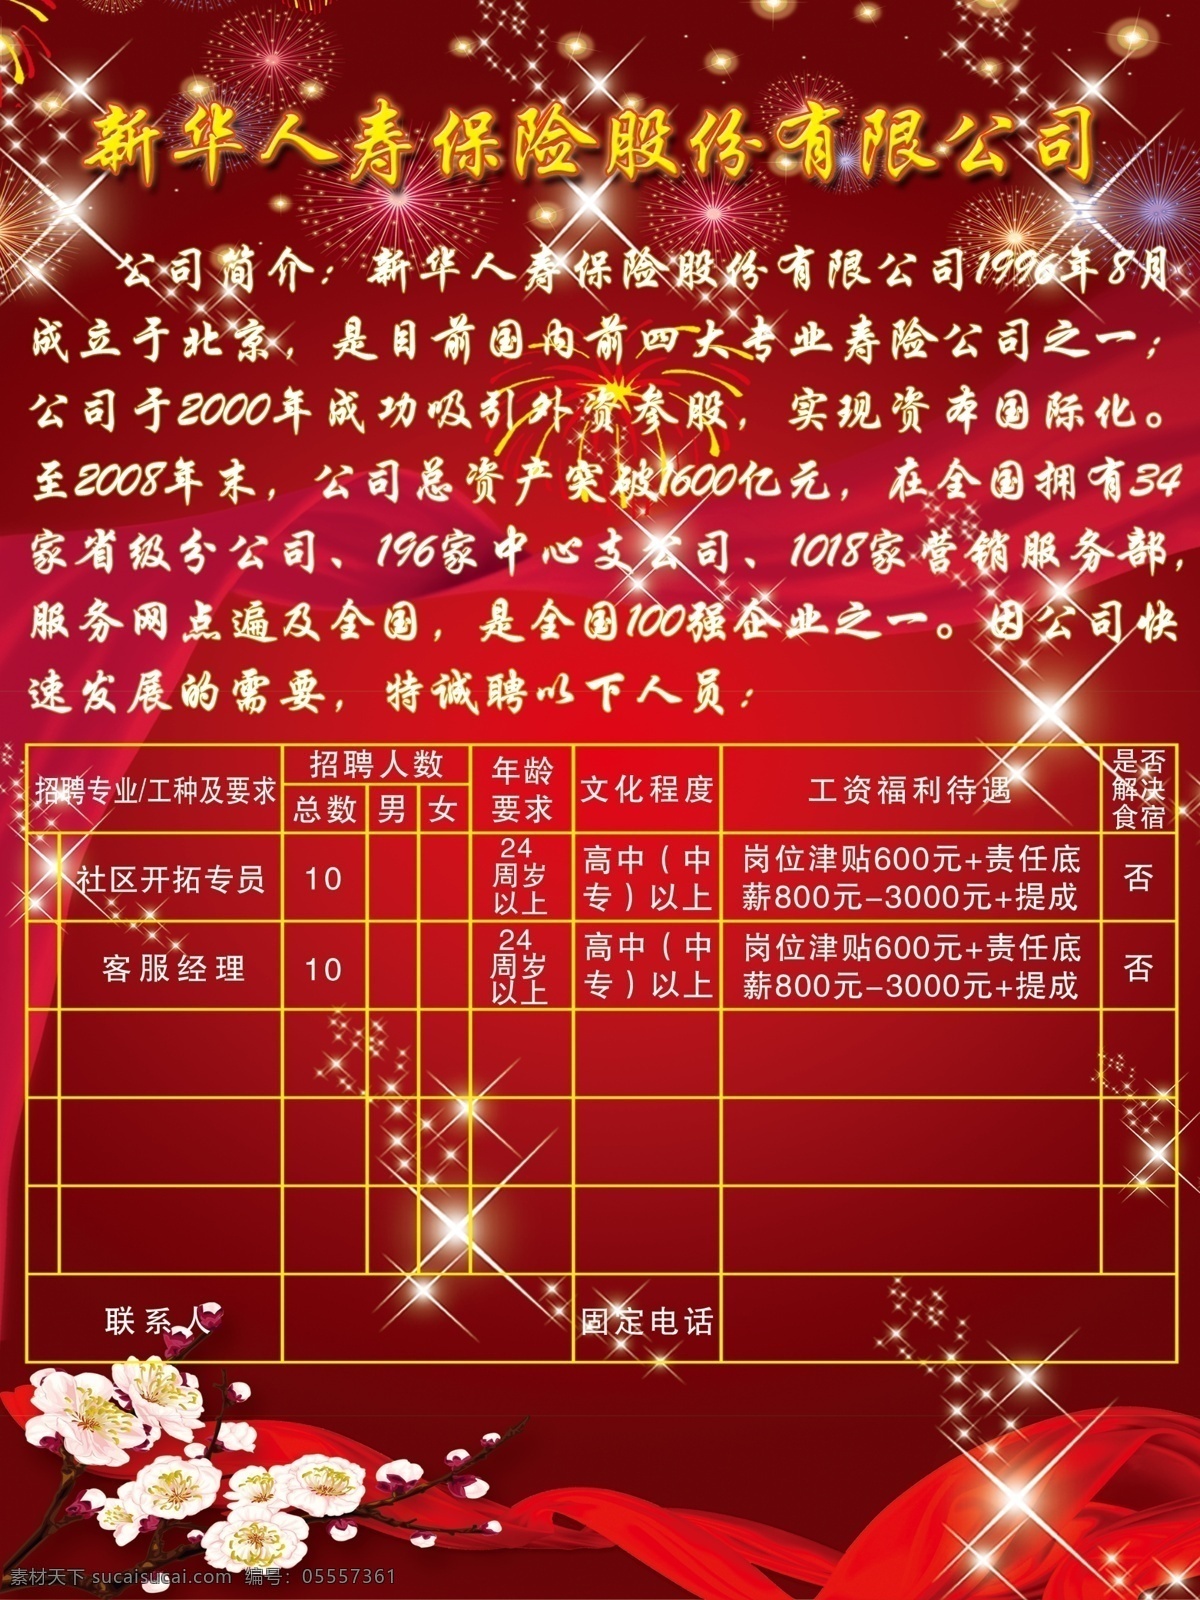 新华保险海报 xinhua insurance 新华保险 广告设计模板 源文件库